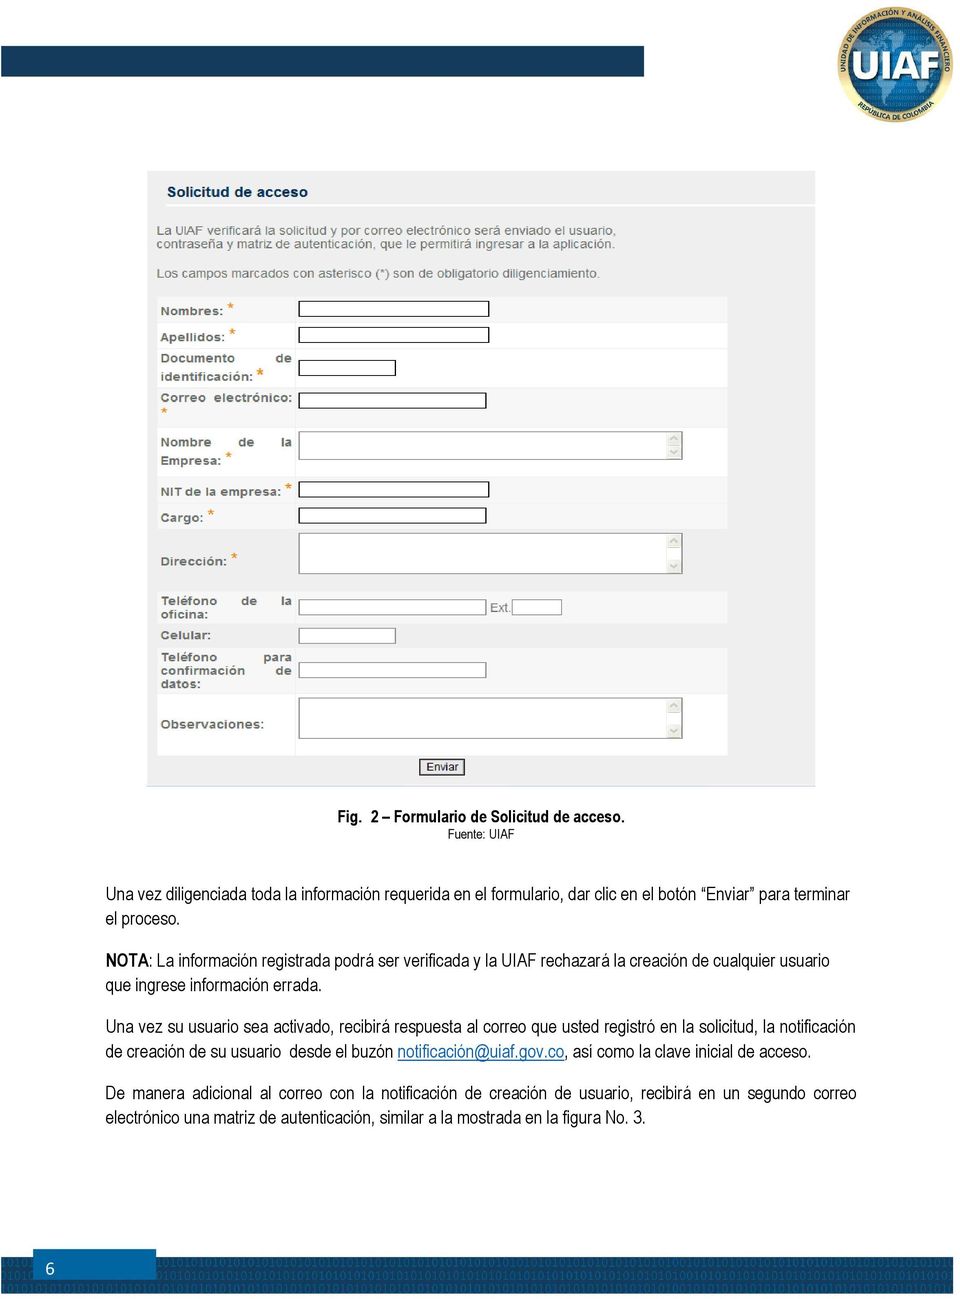 Una vez su usuario sea activado, recibirá respuesta al correo que usted registró en la solicitud, la notificación de creación de su usuario desde el buzón notificación@uiaf.gov.